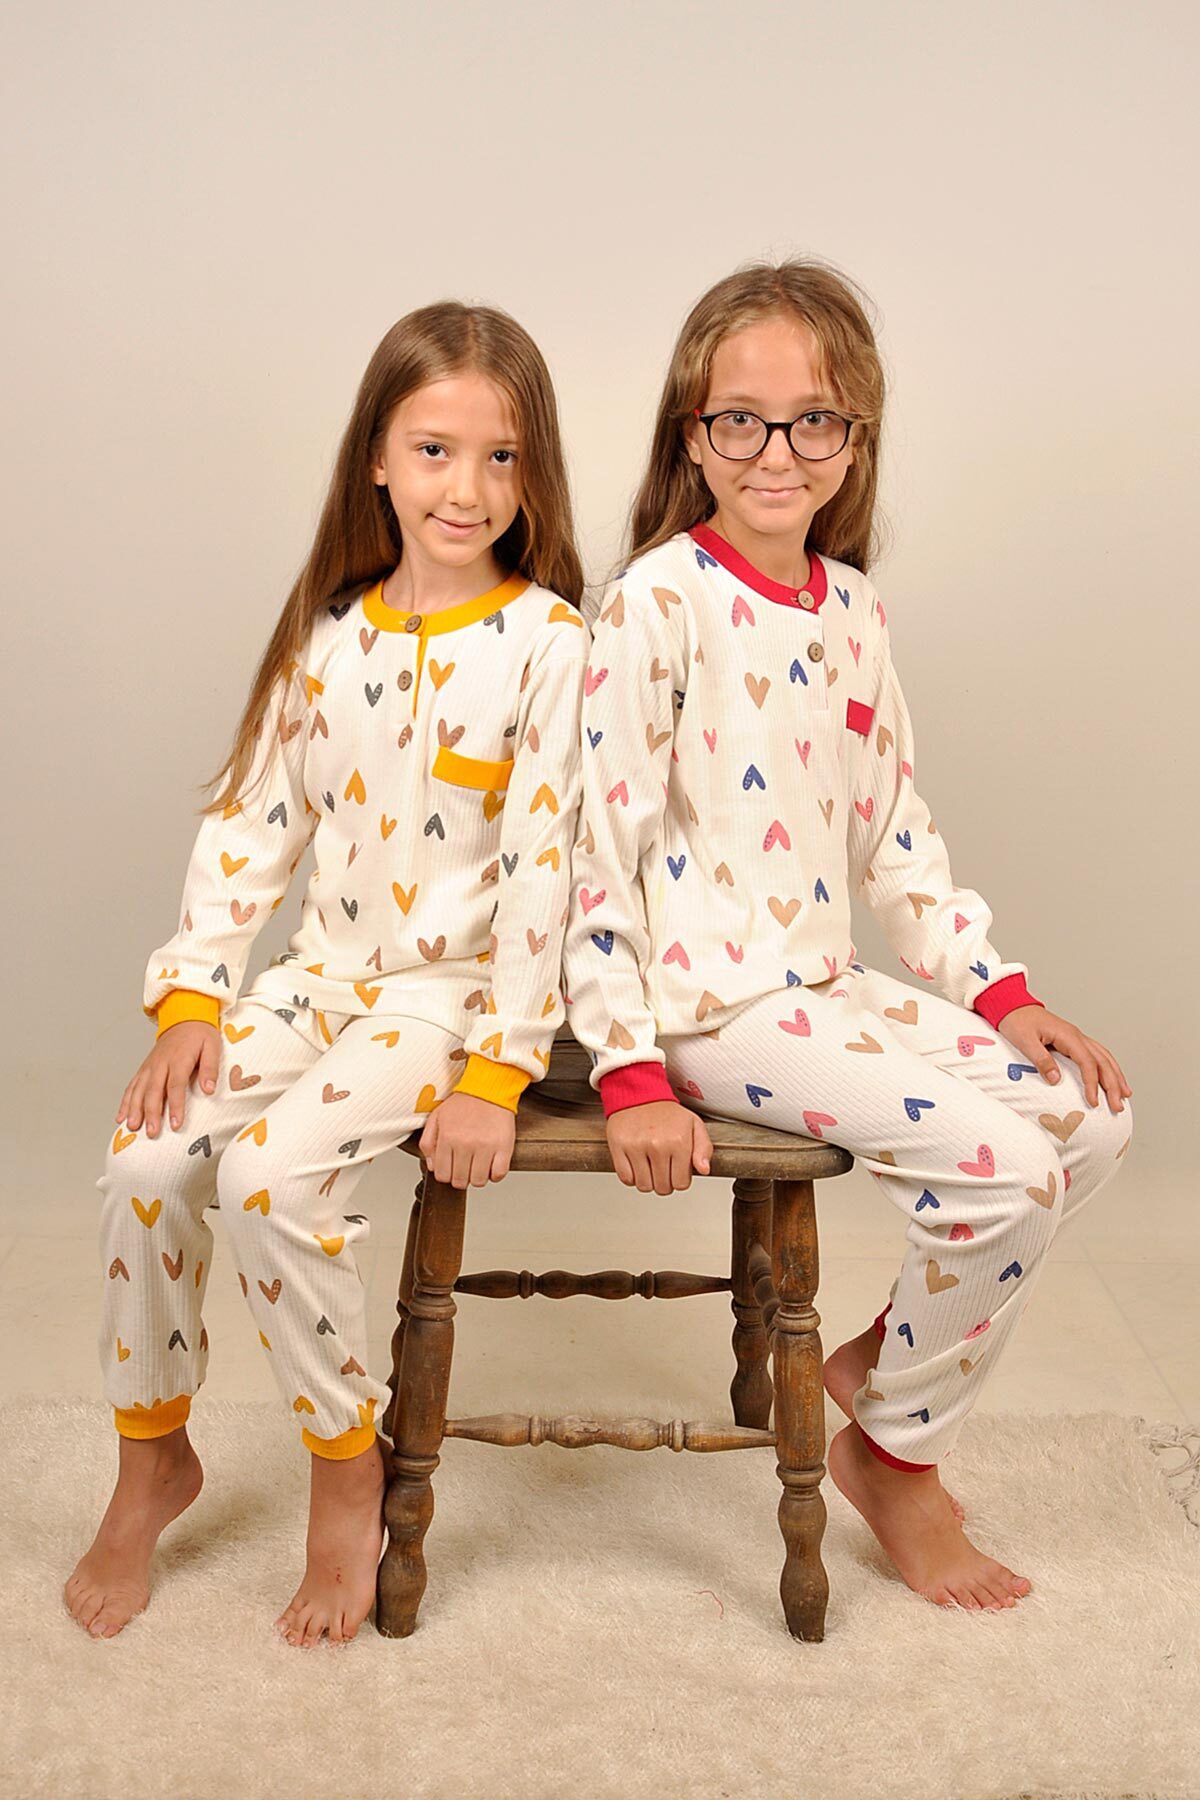 Peki Çocuk 5 Al 4 Öde Kız Pijama Takim Tekir Kedi Pamuklu Kalp Kalpli Gecelik Sabahlık Herdiyelik 14966